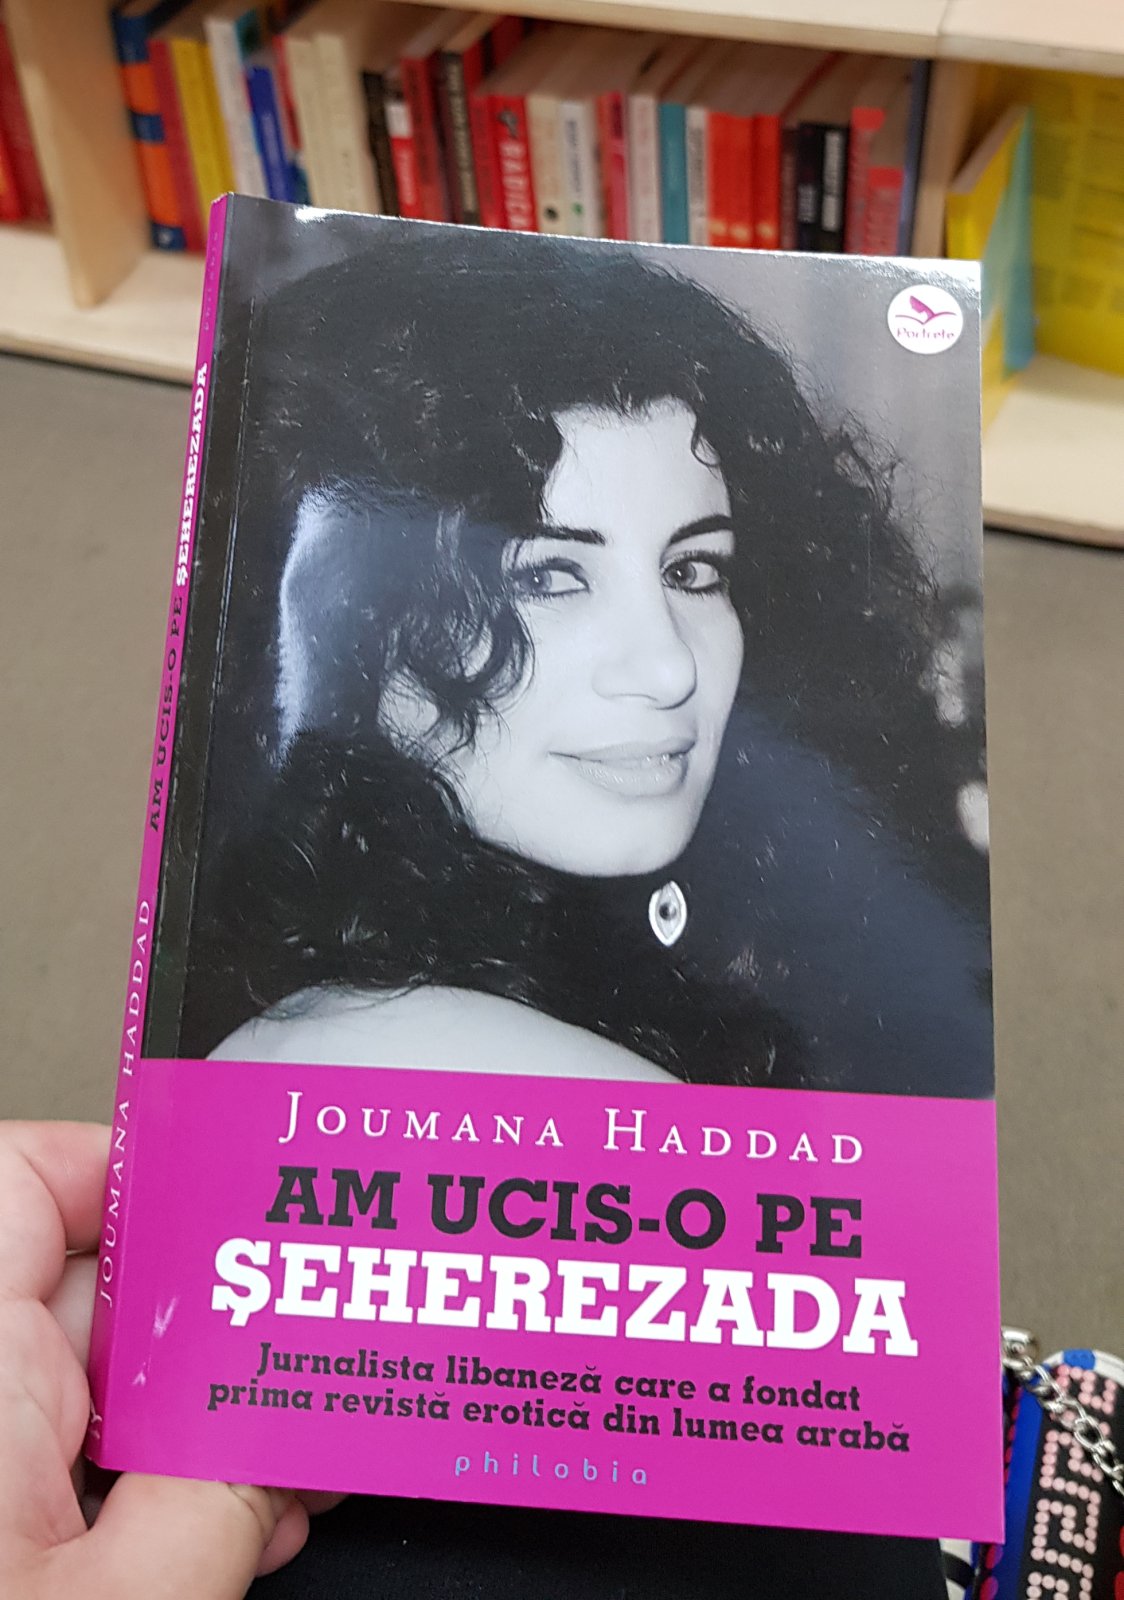 Houmana Haddad - Am ucis-o pe Şeherezada